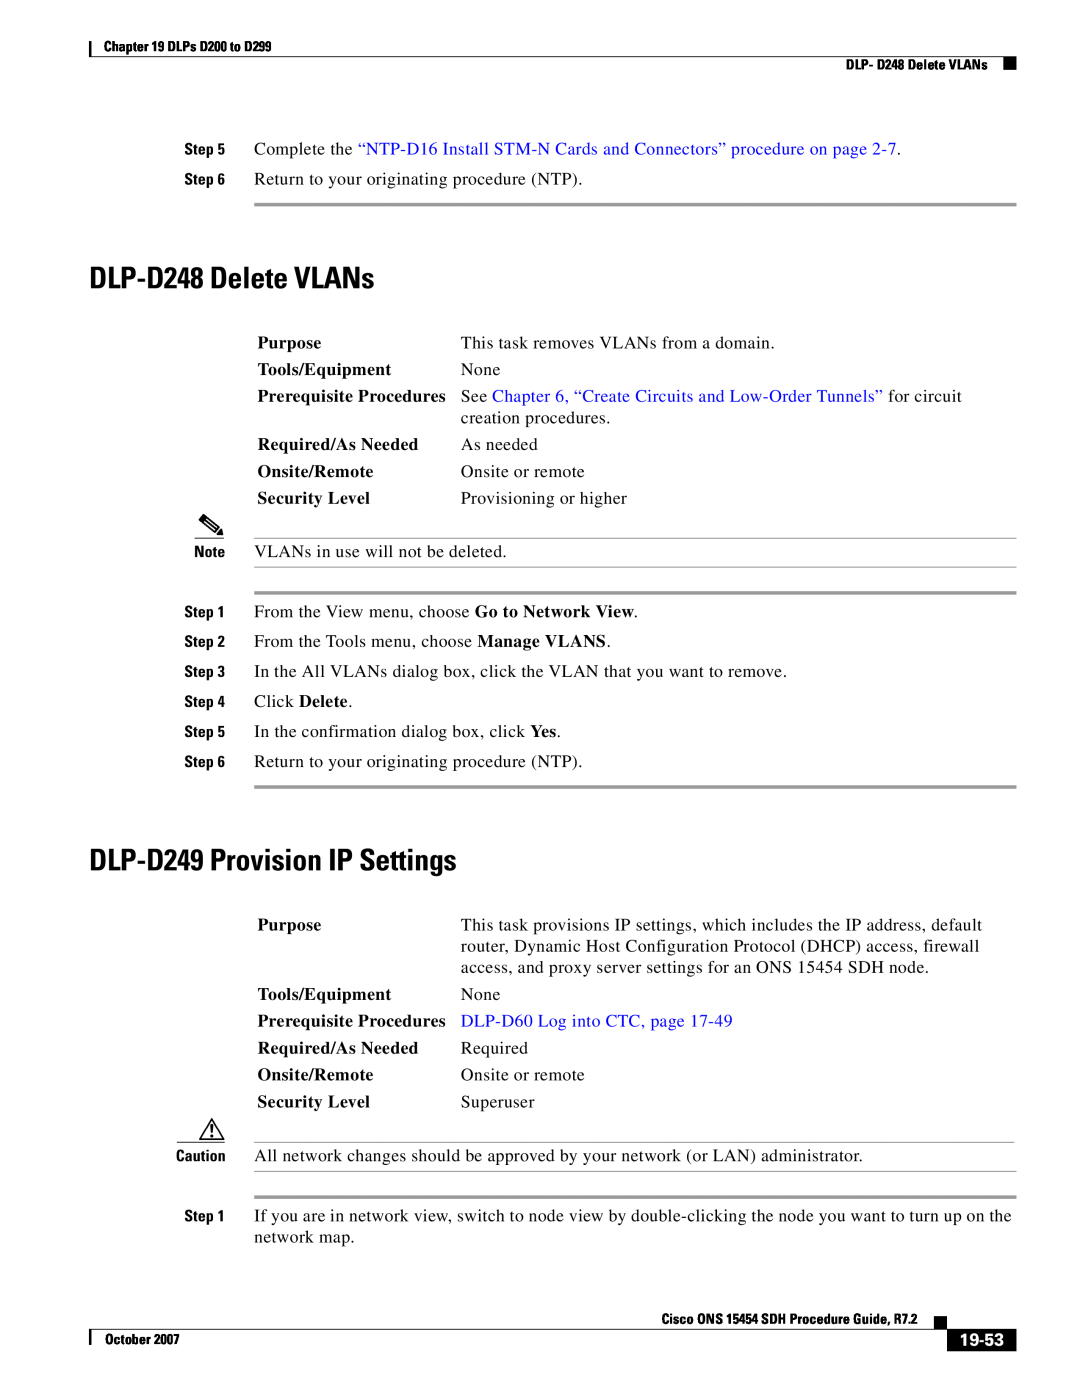 Cisco Systems D200 DLP-D248 Delete VLANs, DLP-D249 Provision IP Settings, 19-53, DLP-D60 Log into CTC, page, Click Delete 